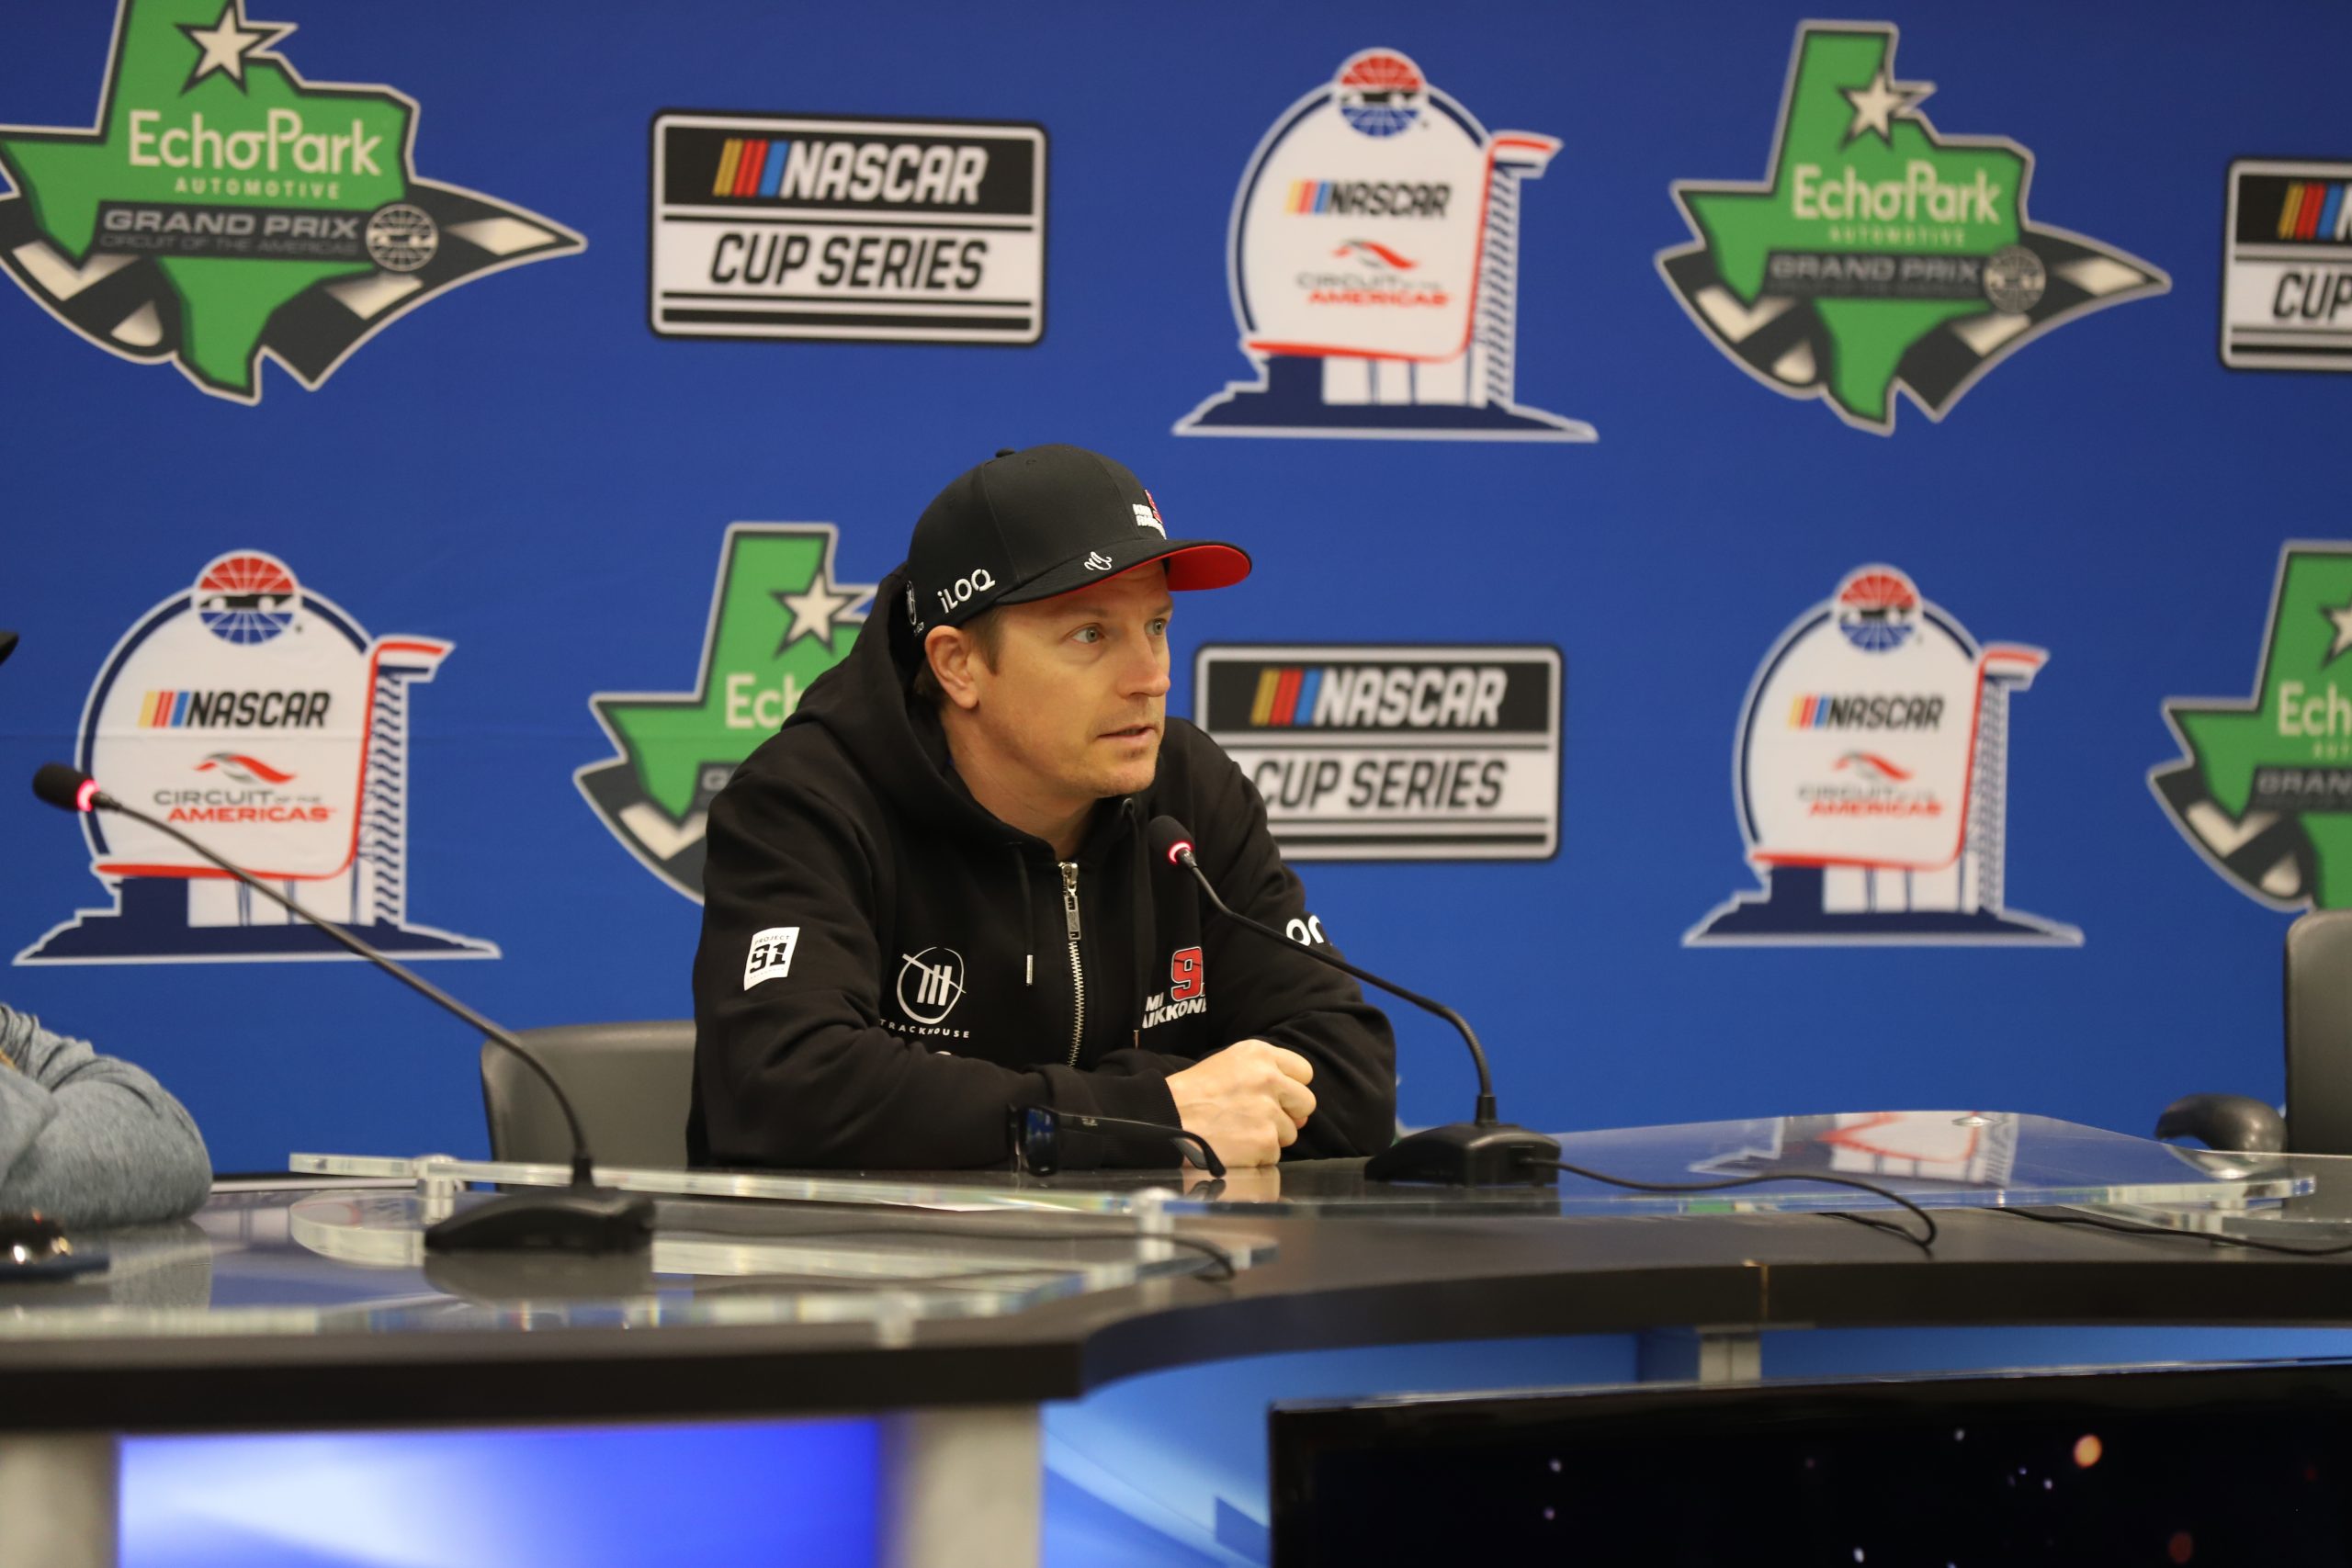 Kimi Räikkönen looks forward to his second NASCAR Cup Series start on Sunday. (Photo: Dylan Nadwodny | The Podium Finish)